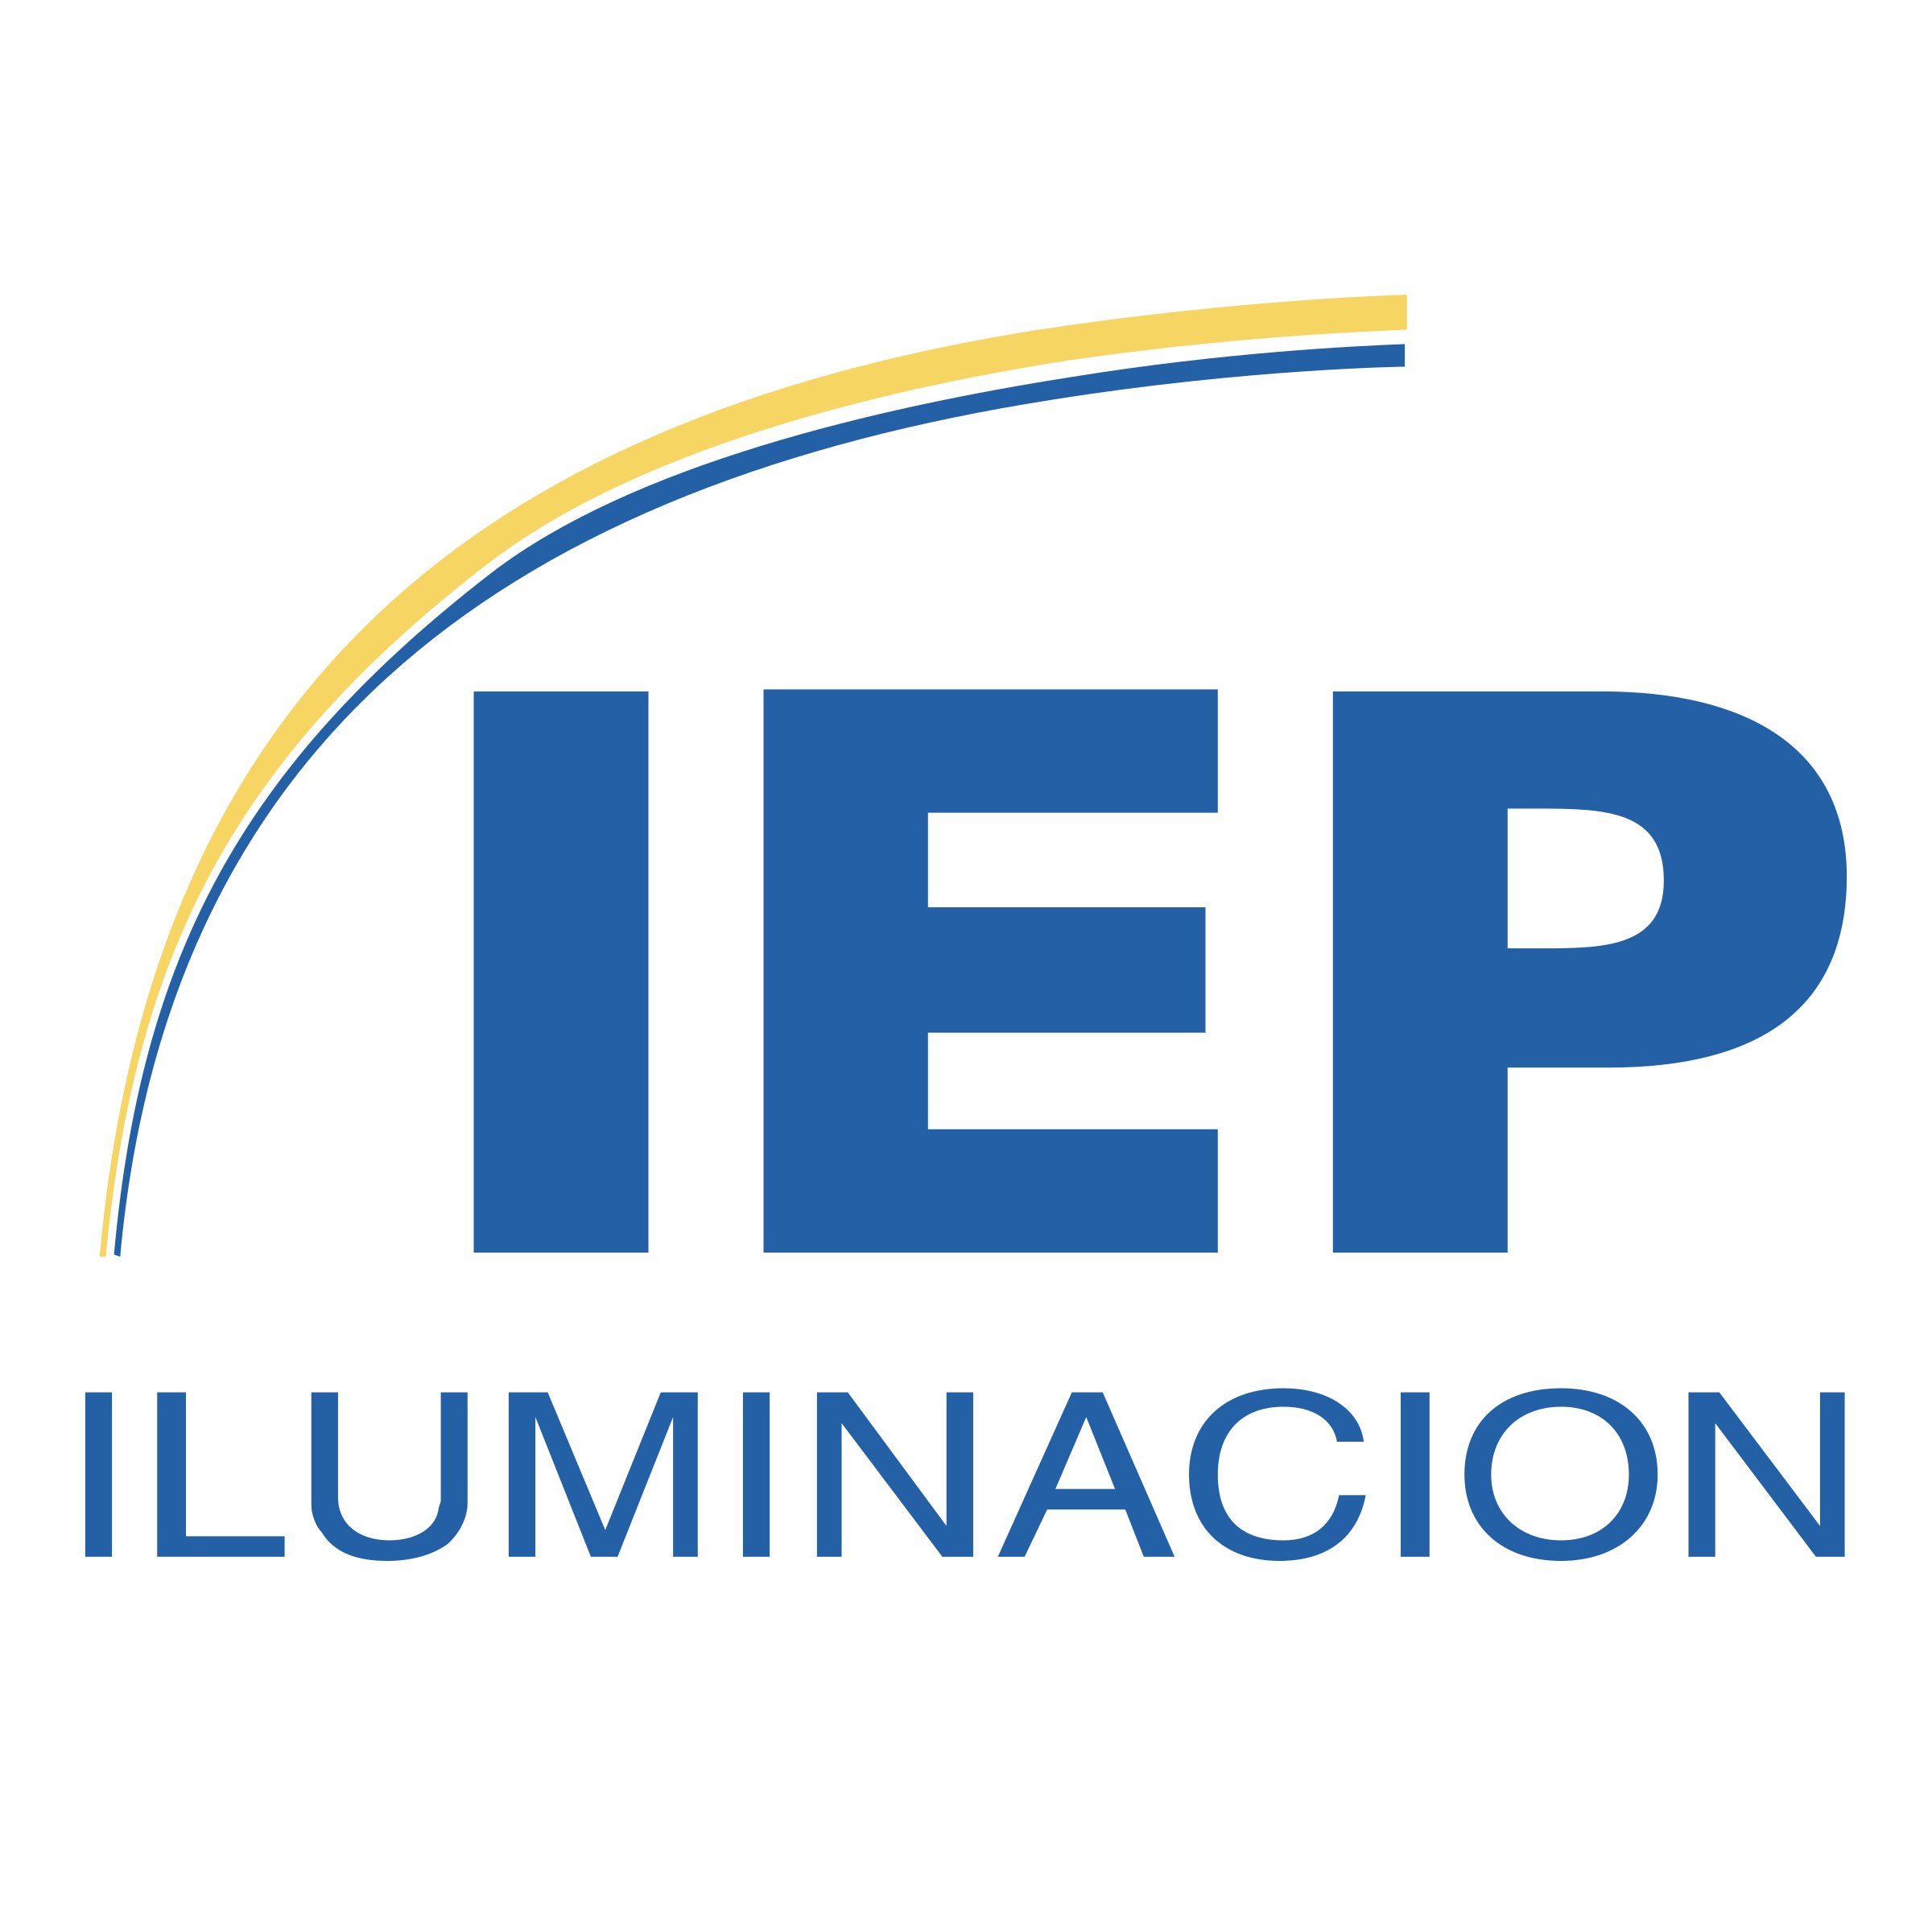 IEP Logo - IEP Iluminacion Logo PNG Transparent & SVG Vector